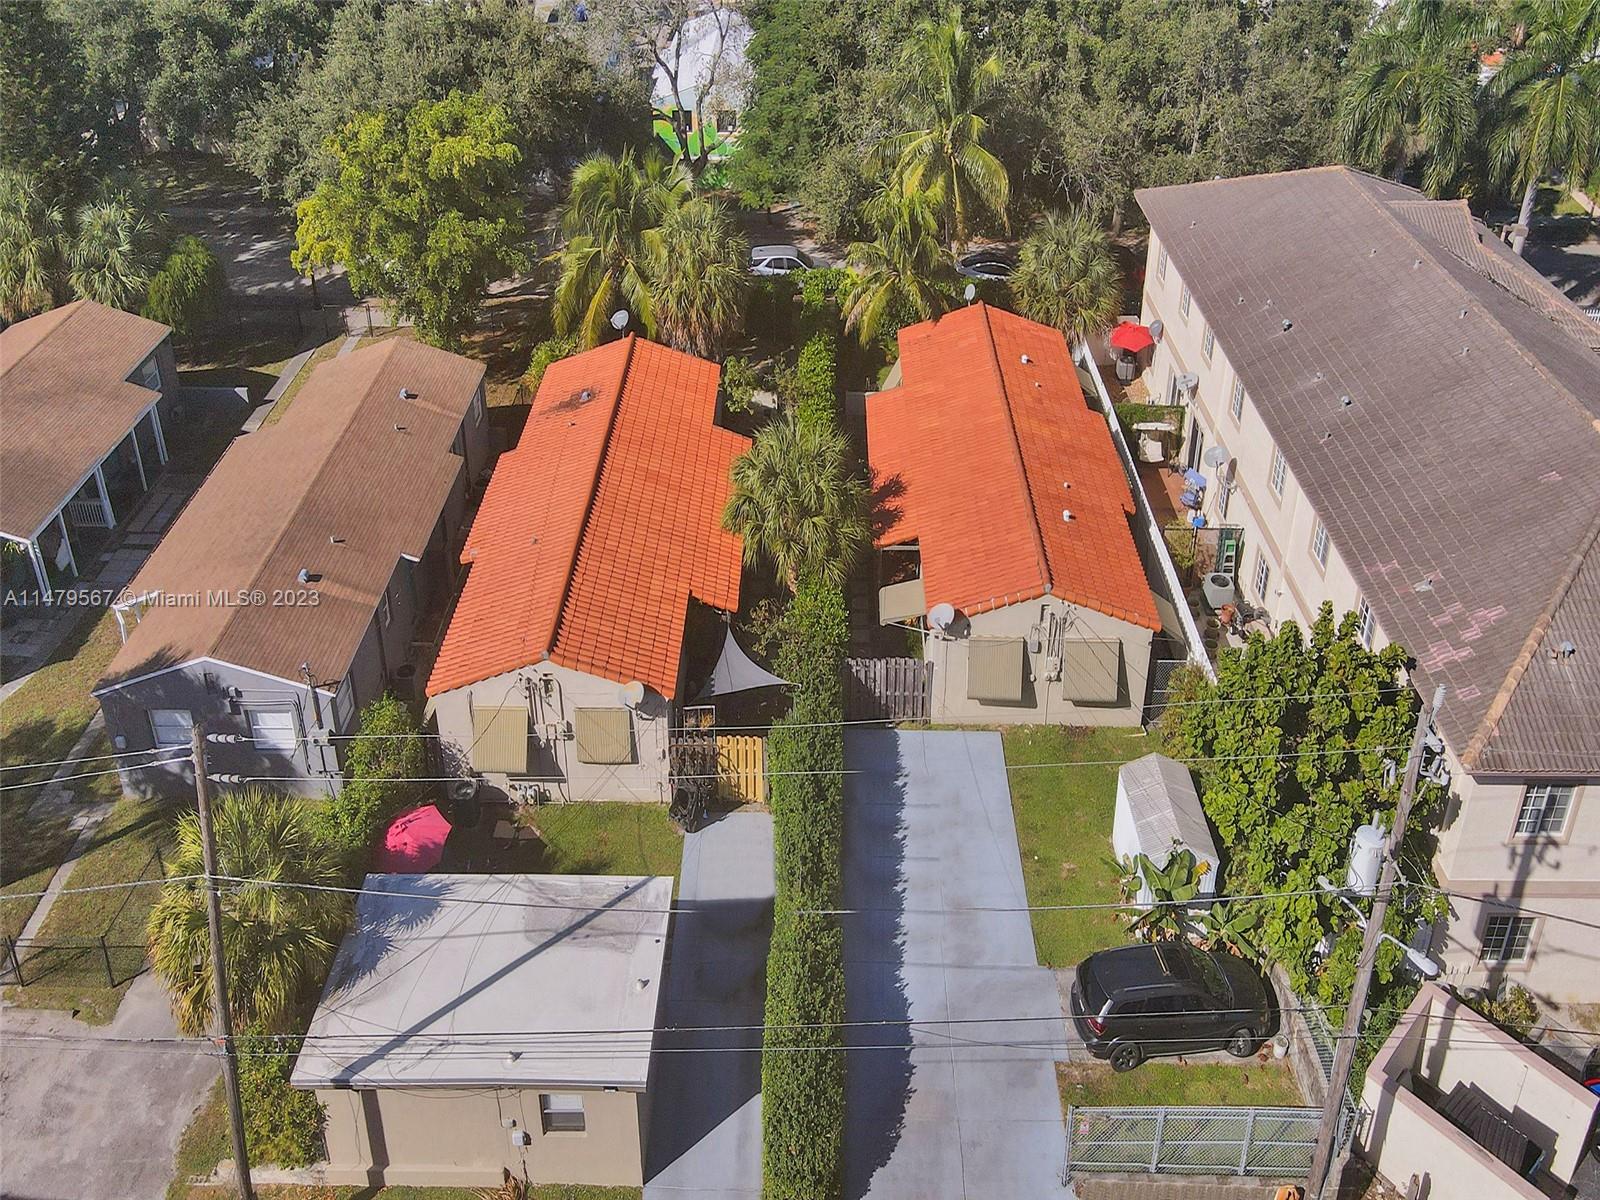 Rental Property at 20262028 Taylor St, Hollywood, Broward County, Florida -  - $950,000 MO.